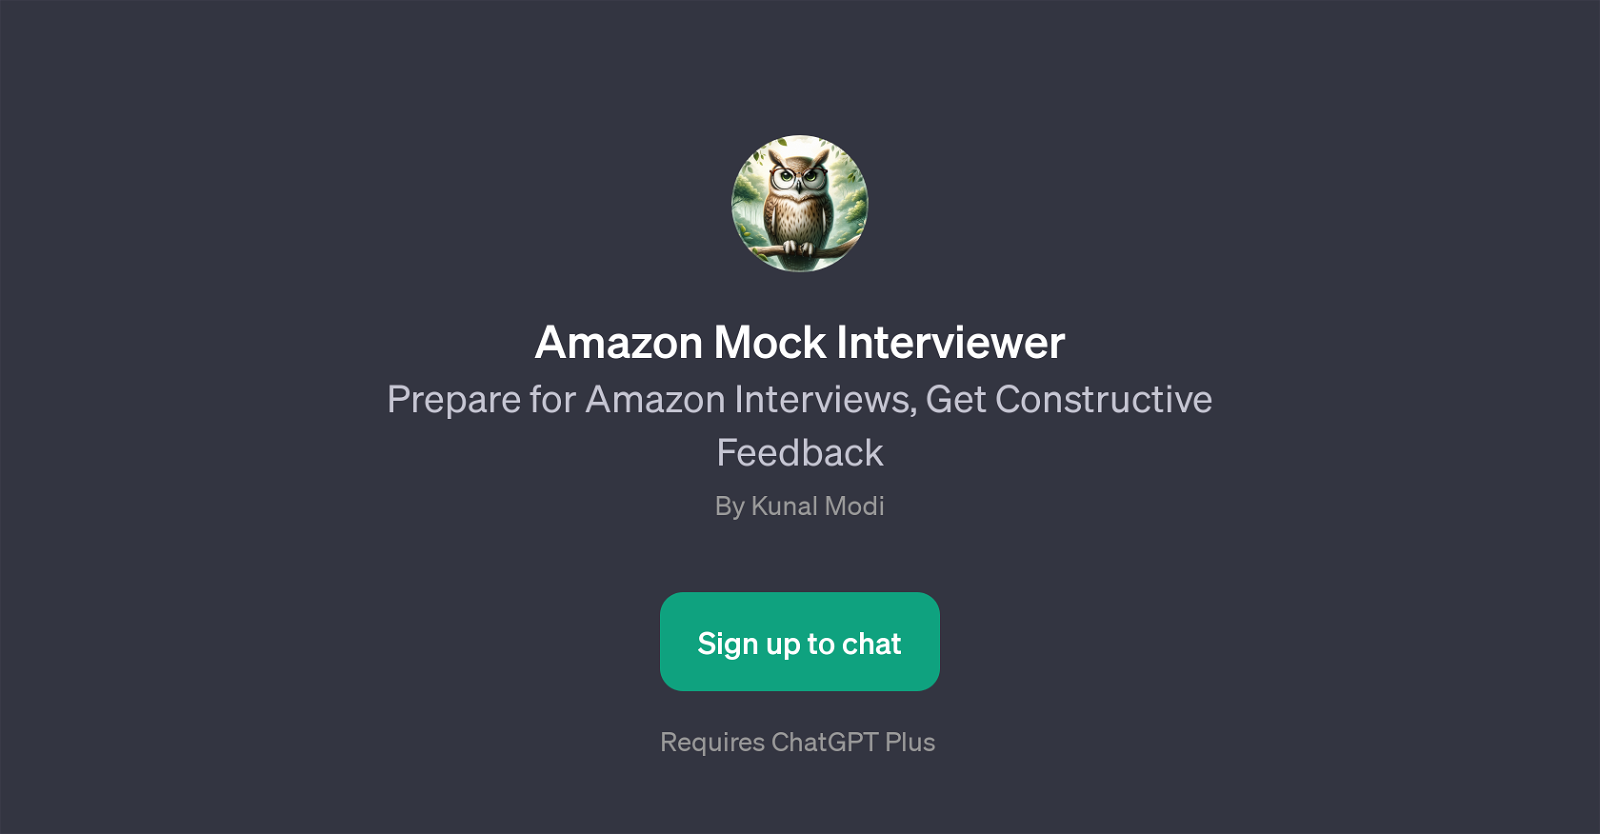 Amazon Mock Interviewer website